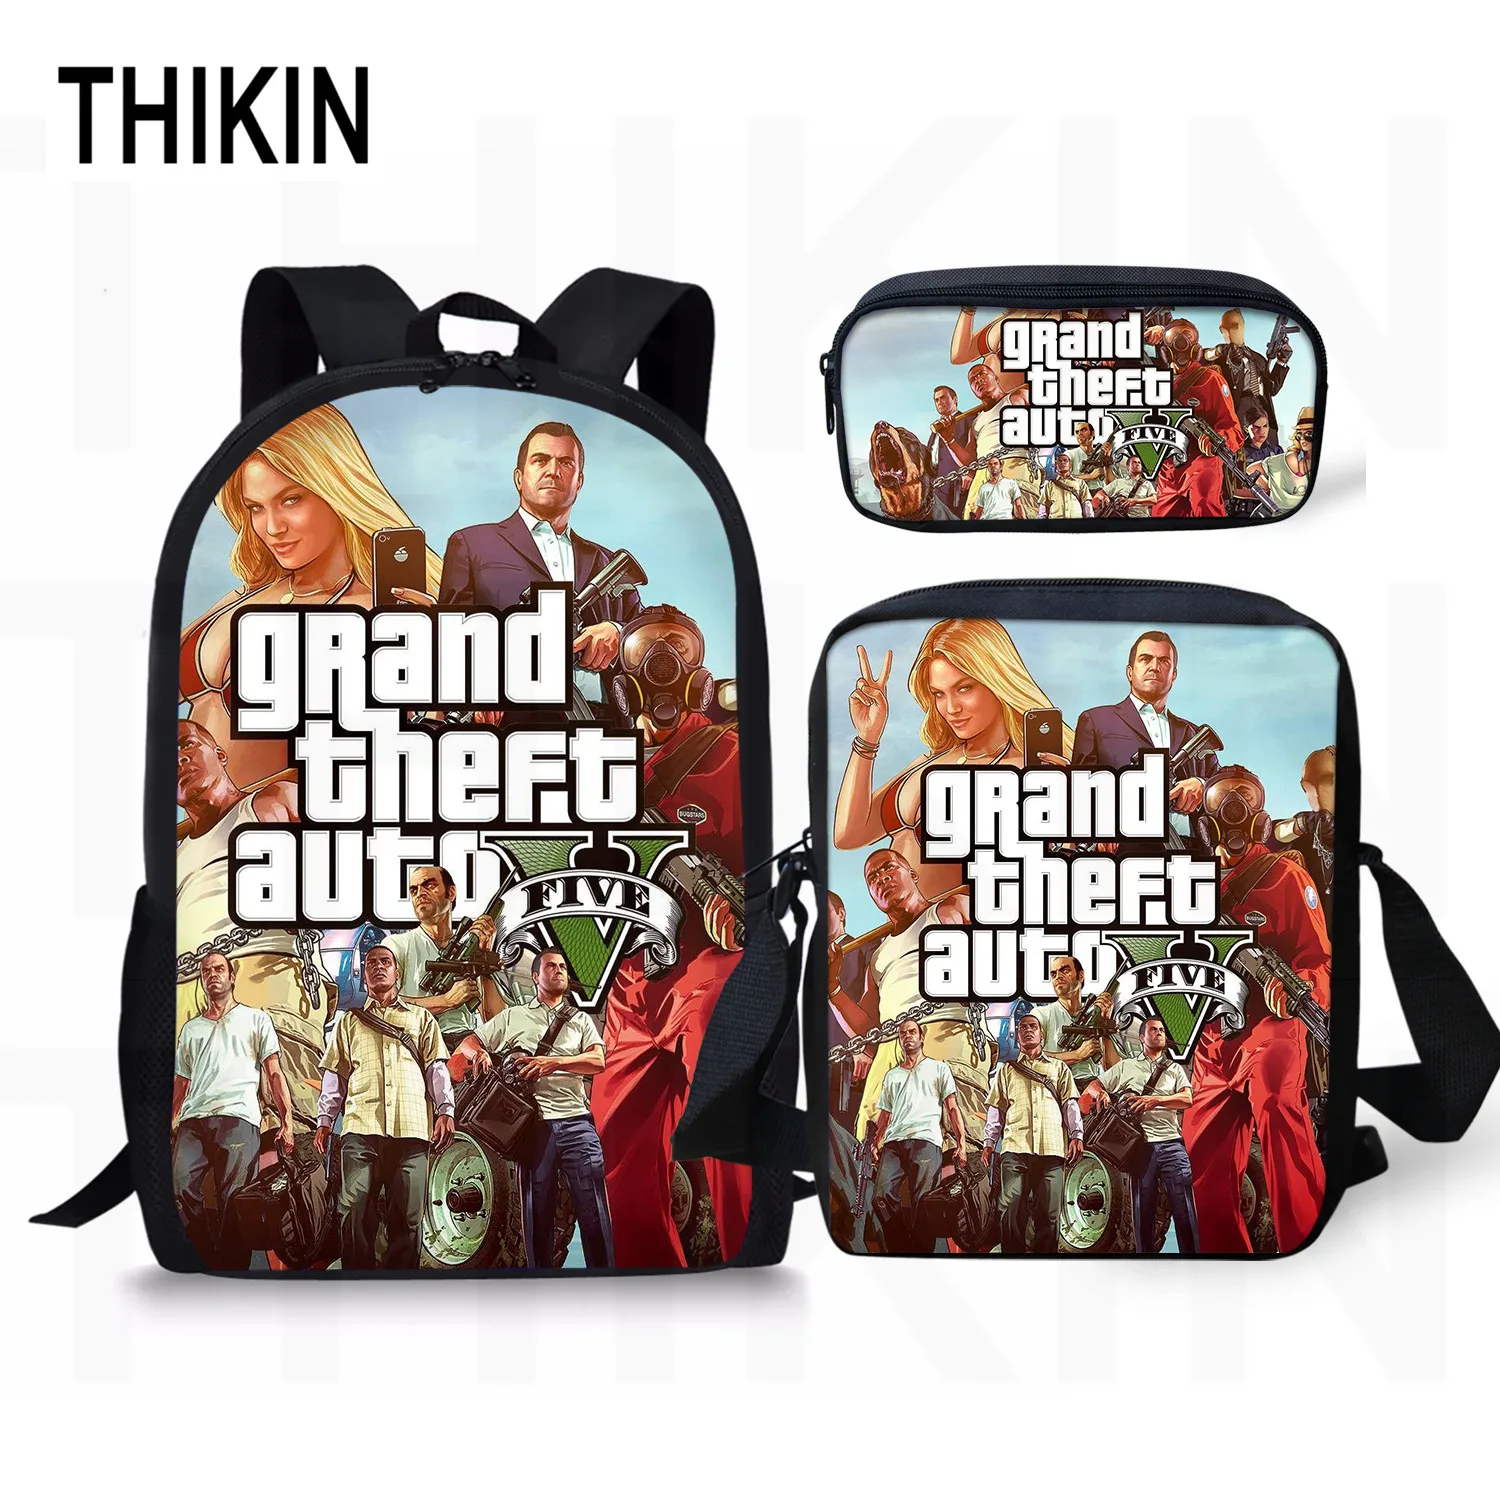 THIKIN Grand Theft Auto школьные сумки для подростков мальчиков 3 шт./компл. сумки на плечо крутая игра GTA рюкзак комплект для детей; обувь для девочек; обувь для студентов; Mochila - Цвет: as picture